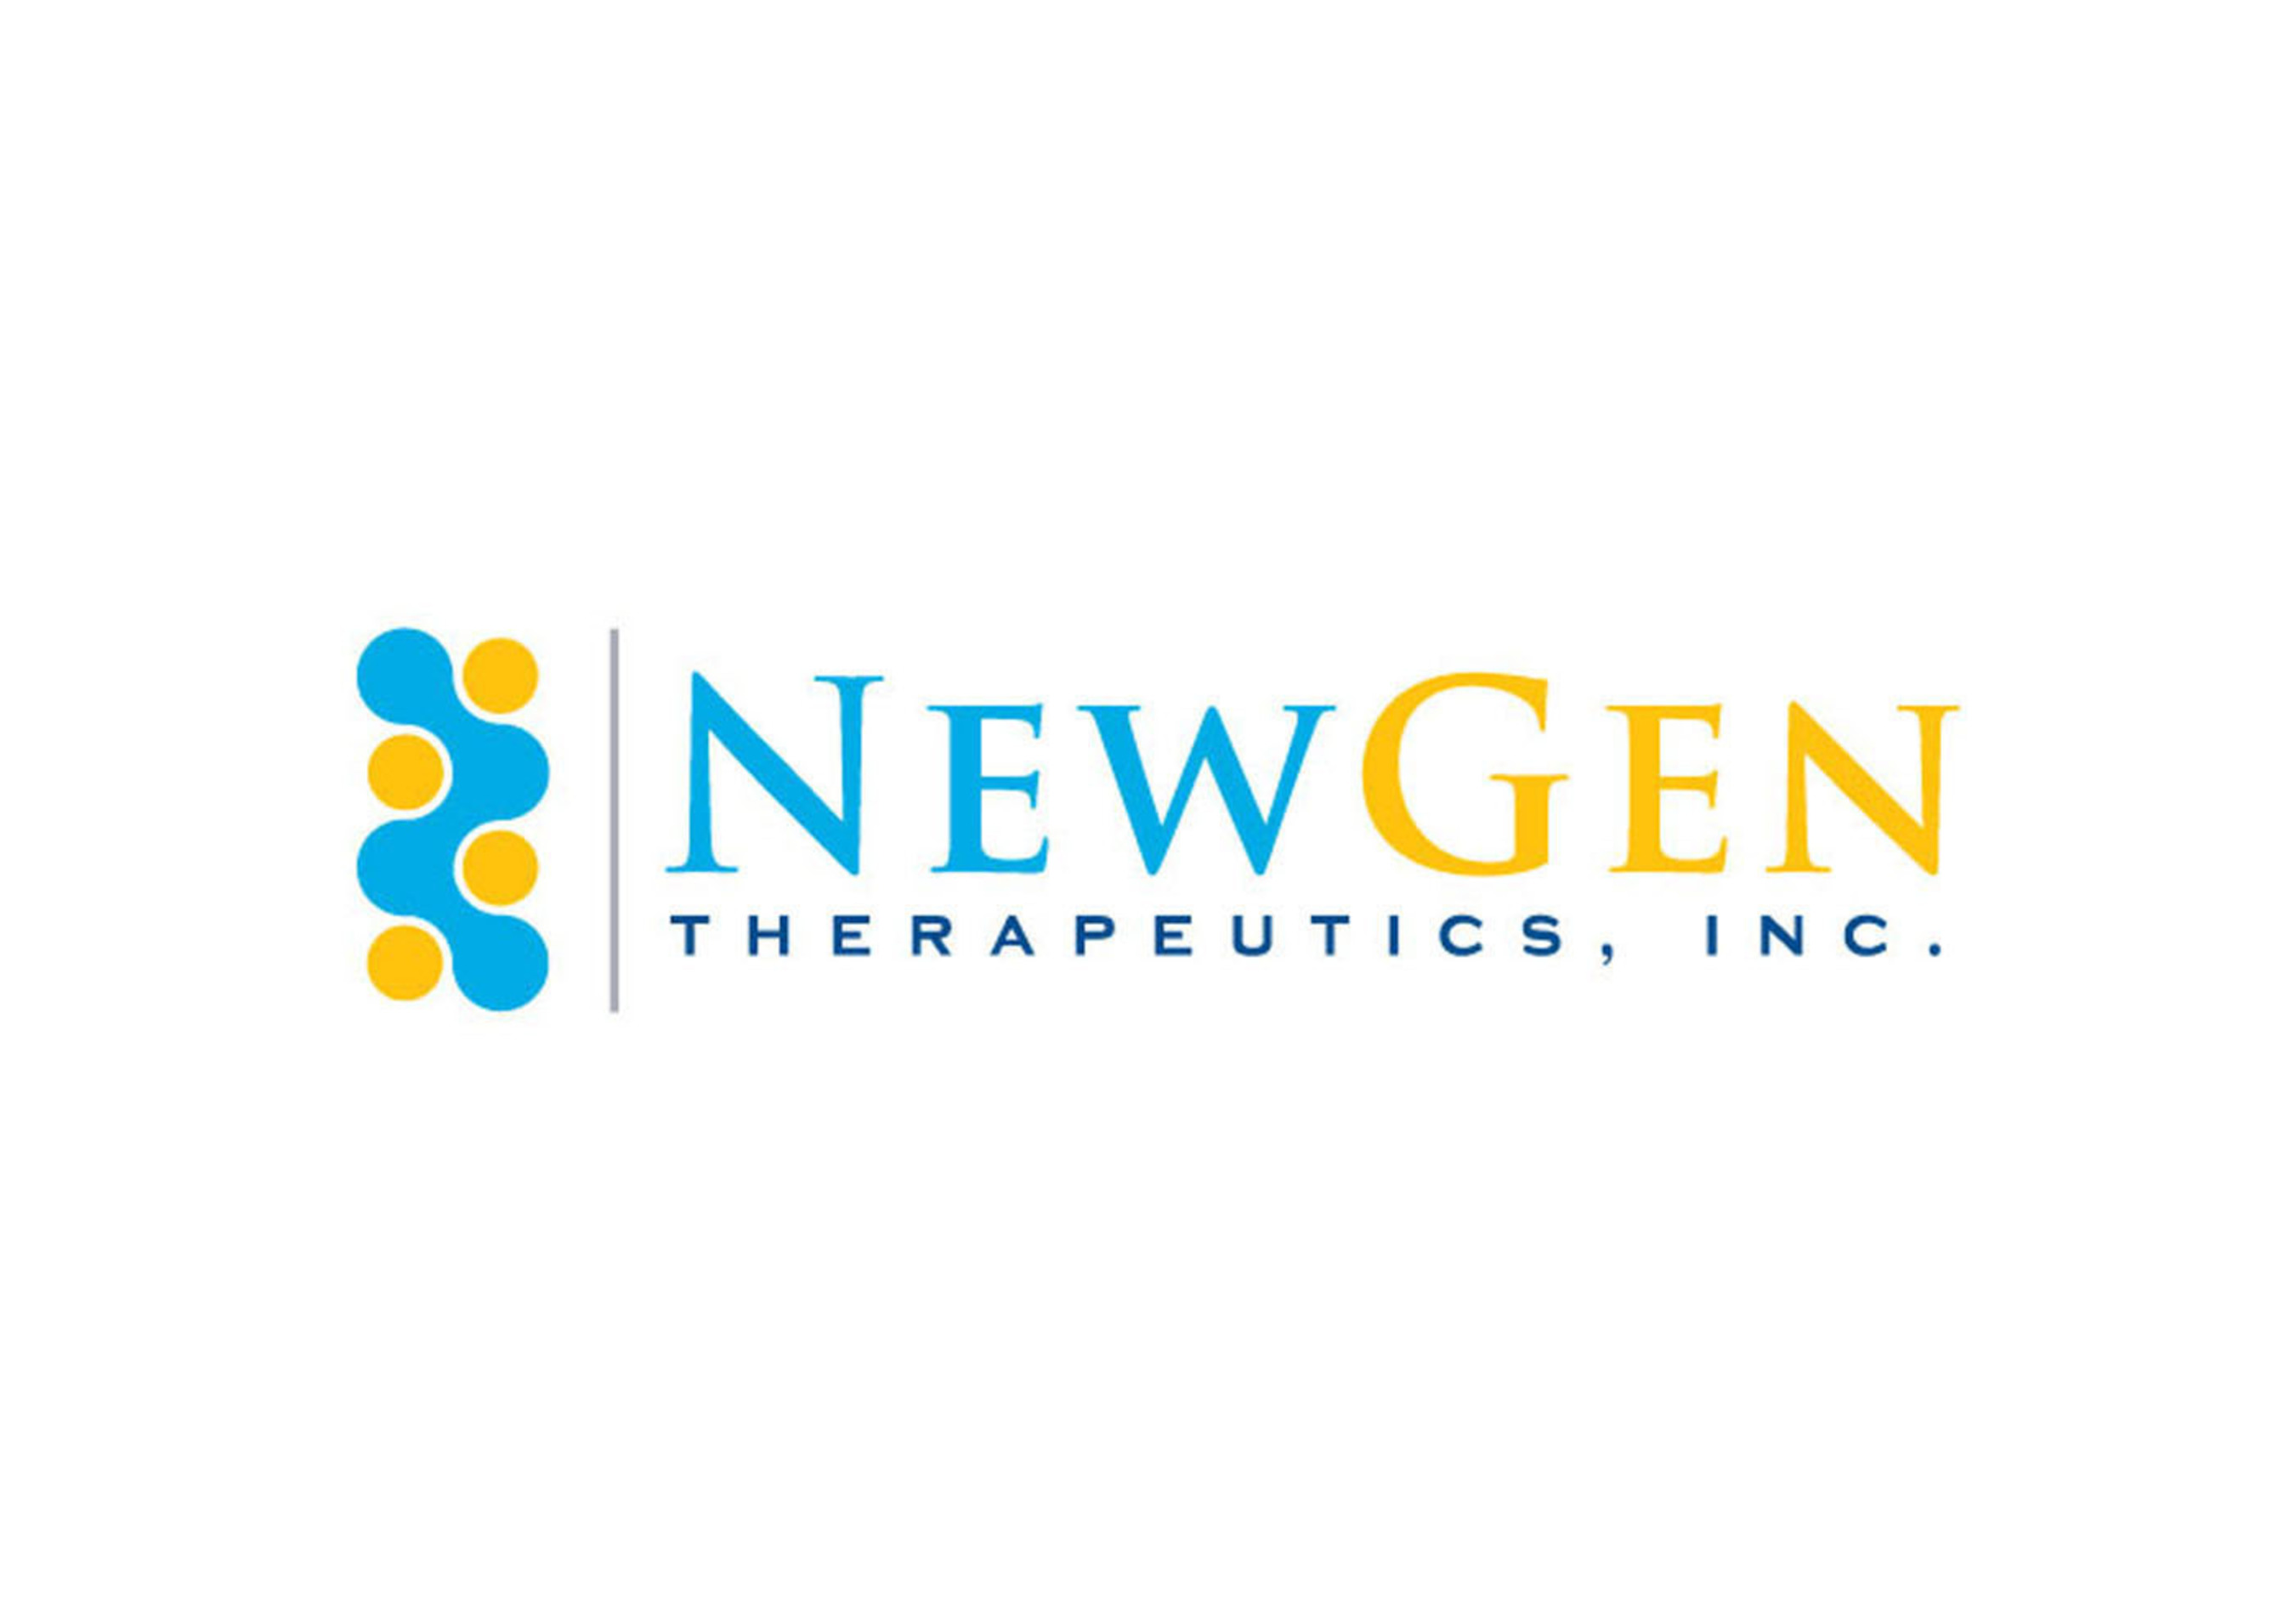 NewGen Therapeutics, Inc. (PRNewsFoto/NewGen Therapeutics) (PRNewsFoto/)